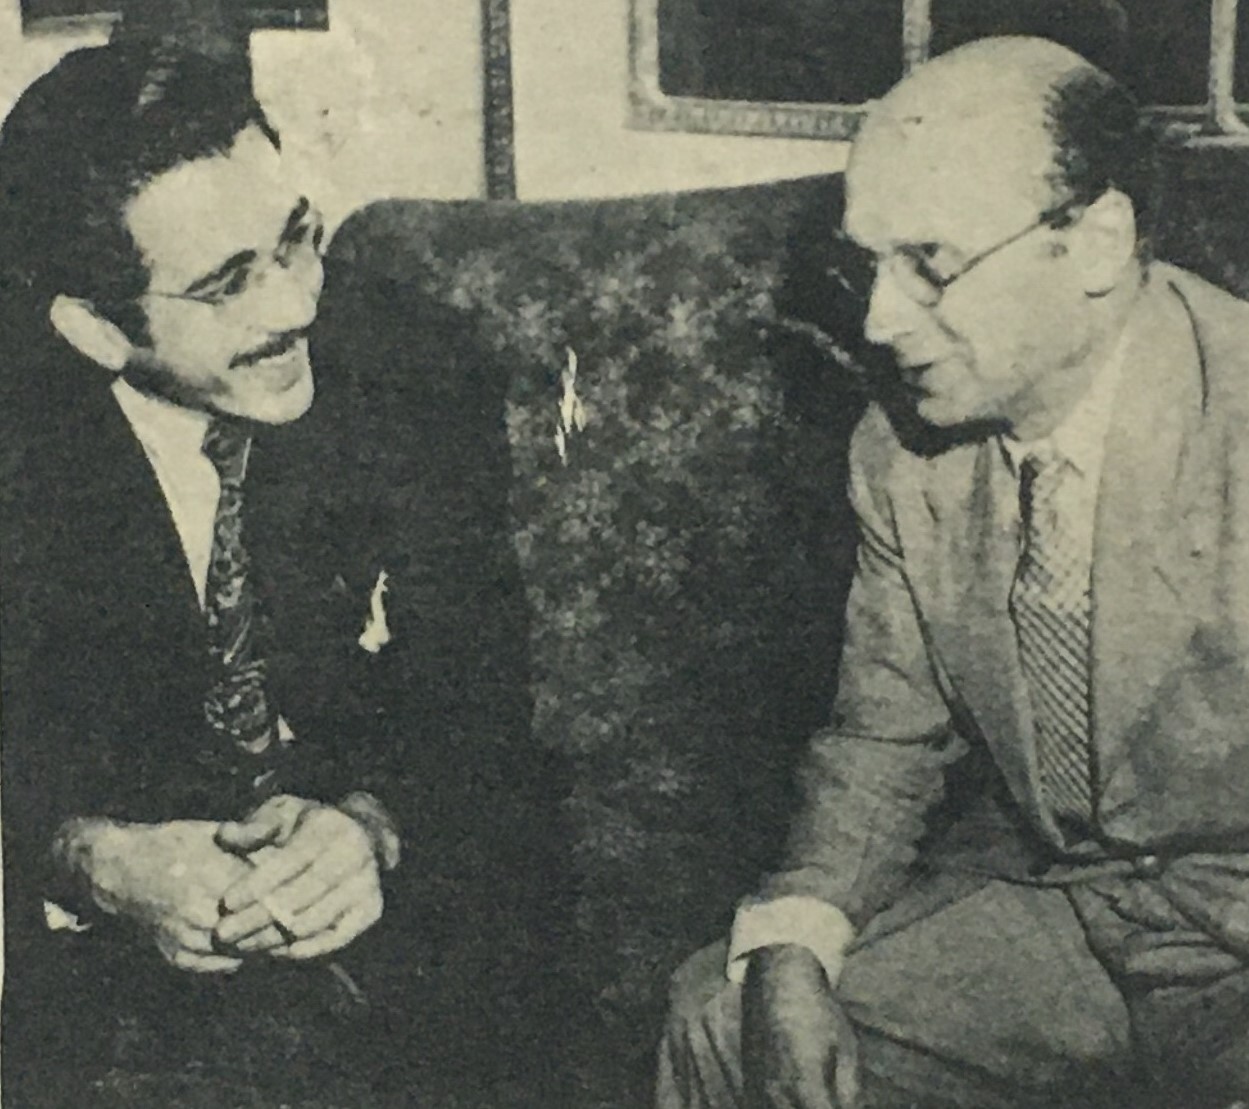 En 1945, el escritor, crítico, editor e historiador venezolano, Alfredo Armas Alfonzo, le realizó la primera entrevista que dio Emil Friedman en Venezuela.